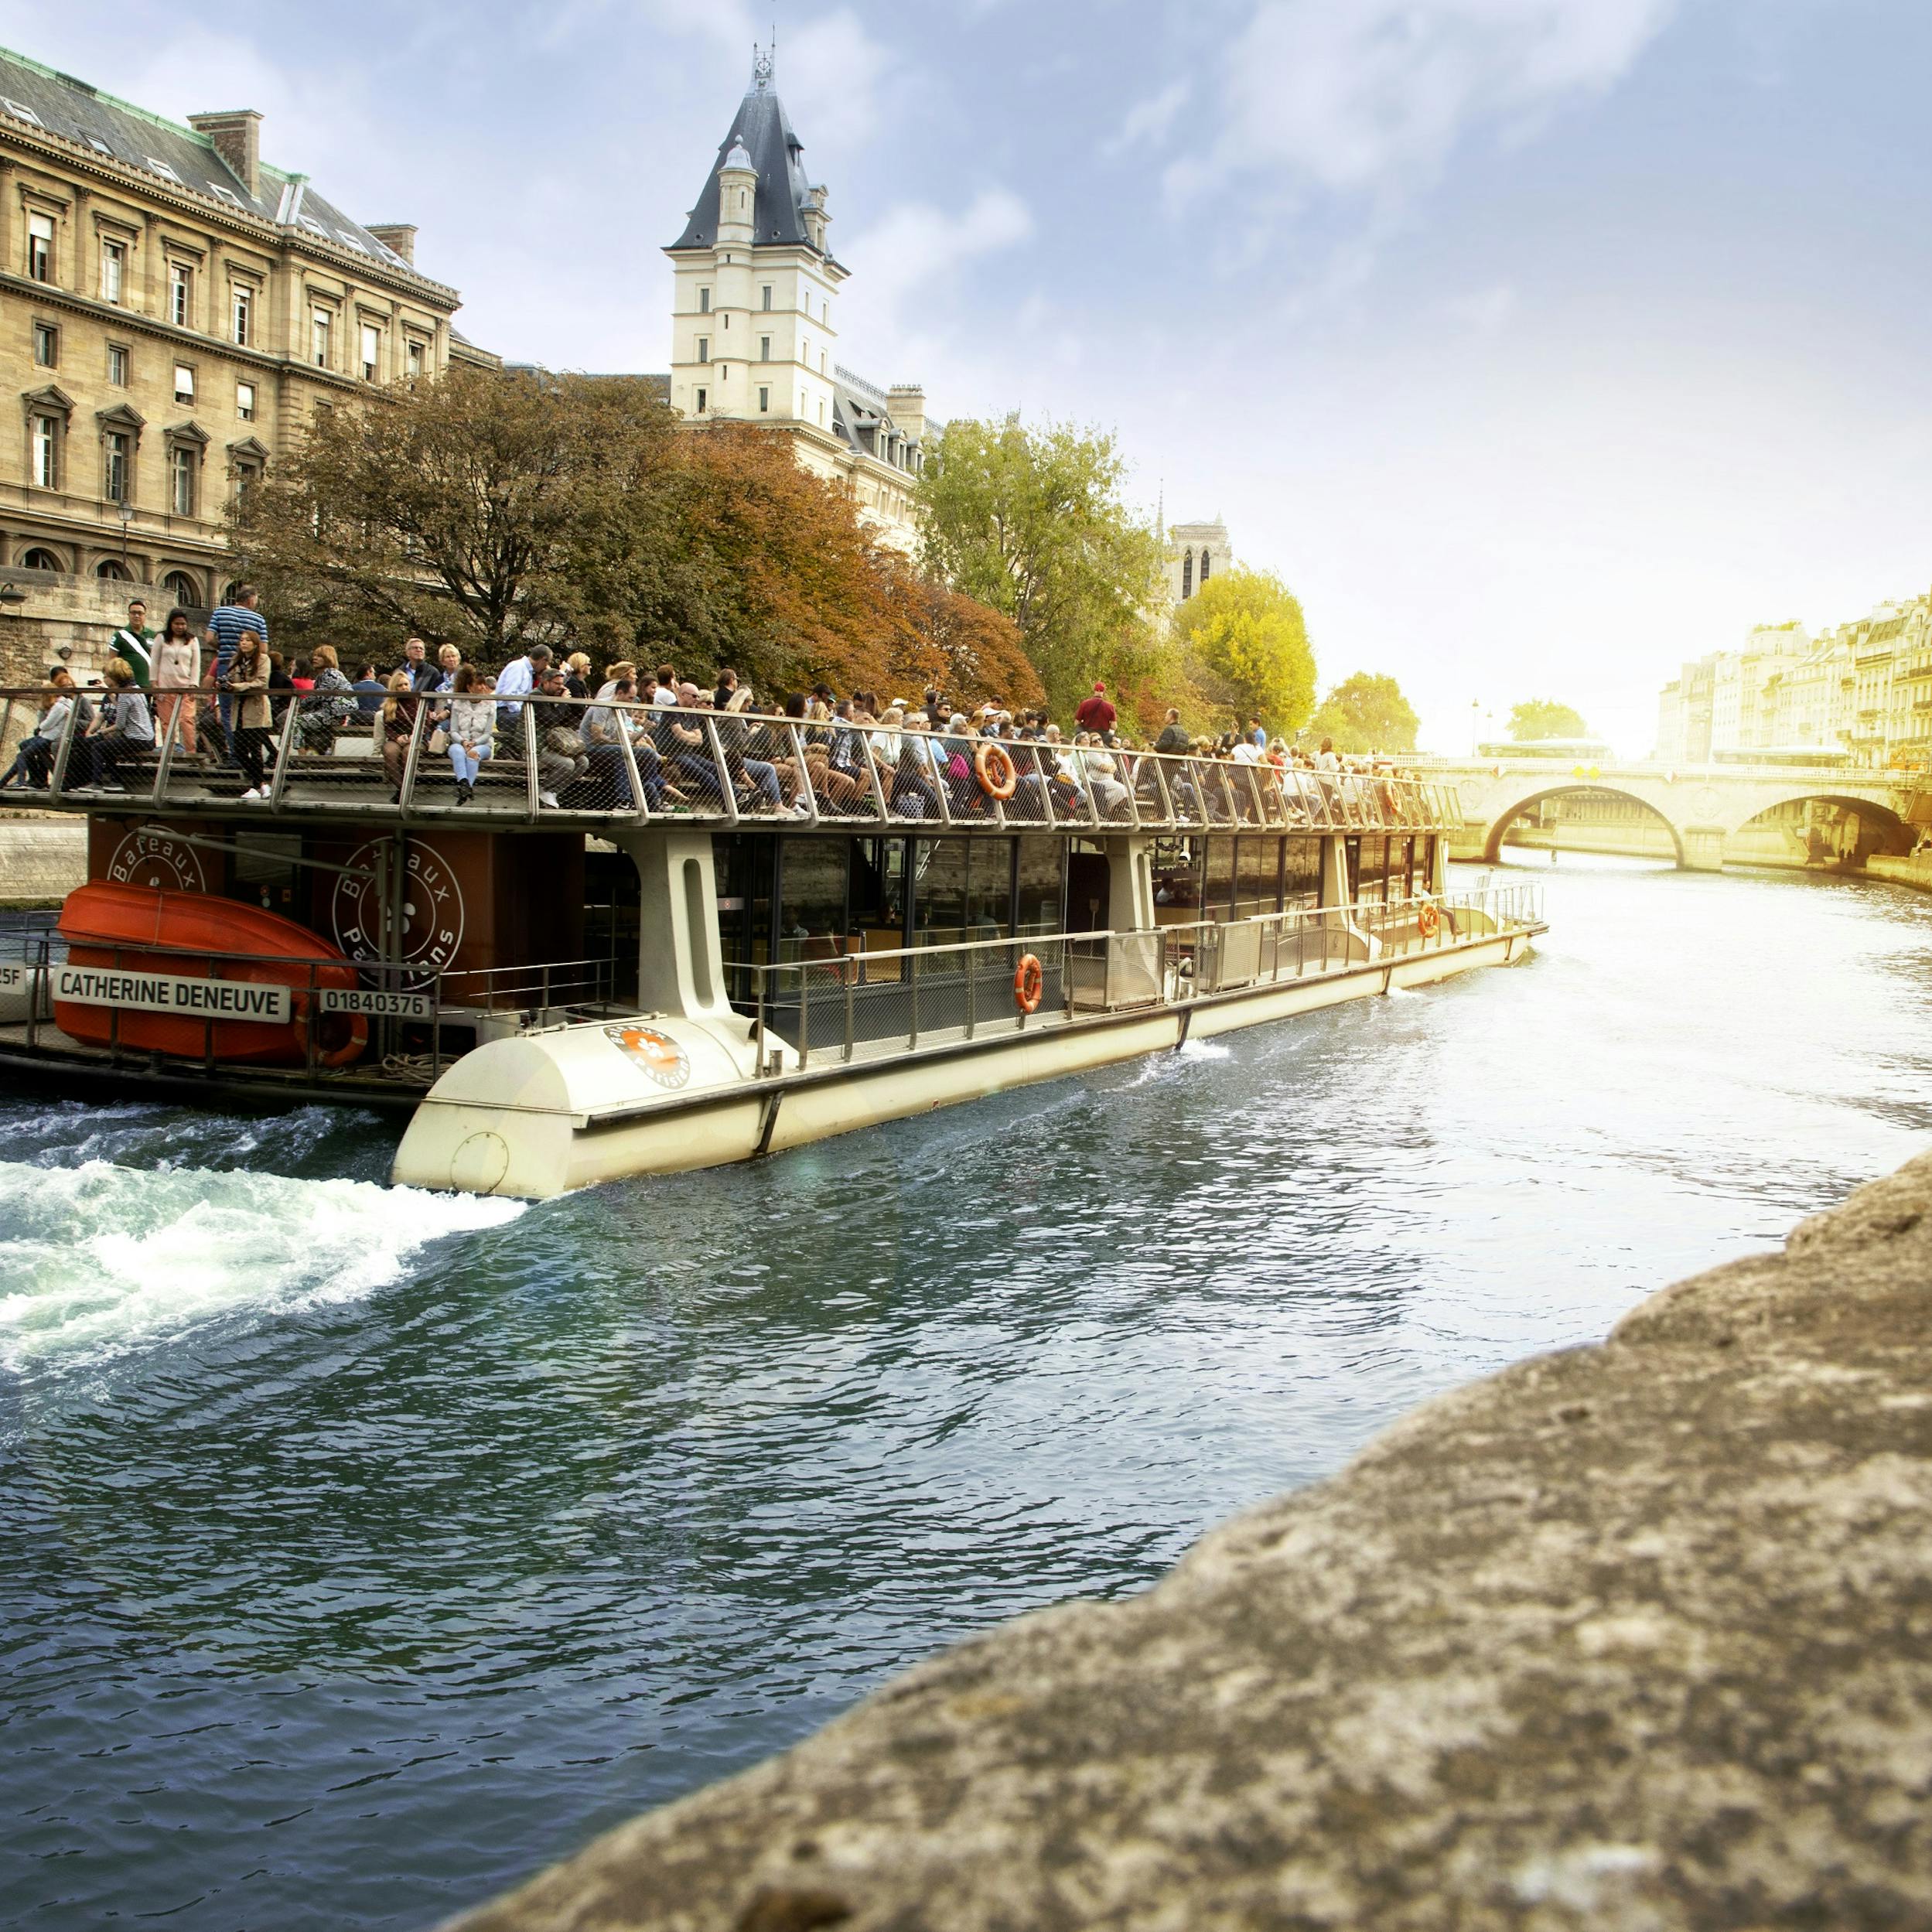 Речка сена. Круиз по сене Bateaux parisiens. Река сена в Париже. Река сена во Франции. Бато Паризьен.